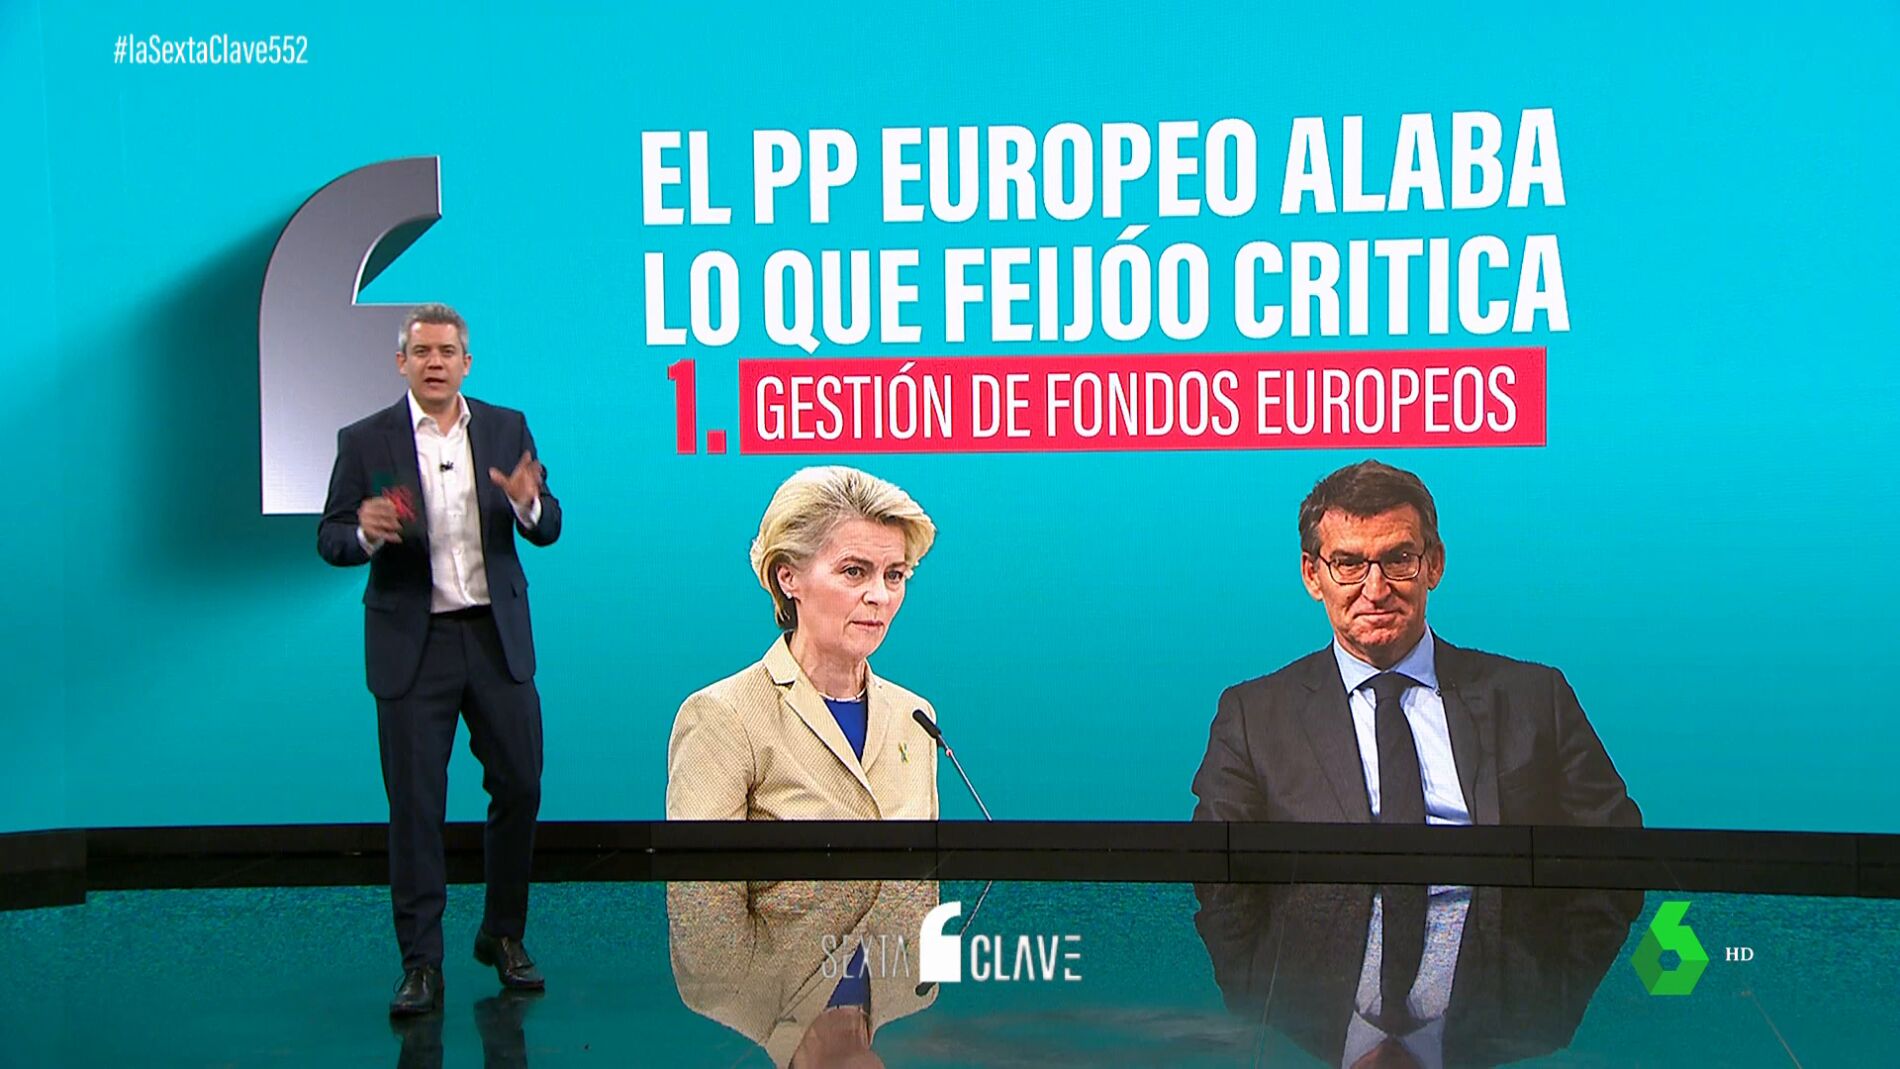 Feijóo critica lo que el PP europeo alaba todas las medidas de Sánchez que  gustan a la derecha comunitaria